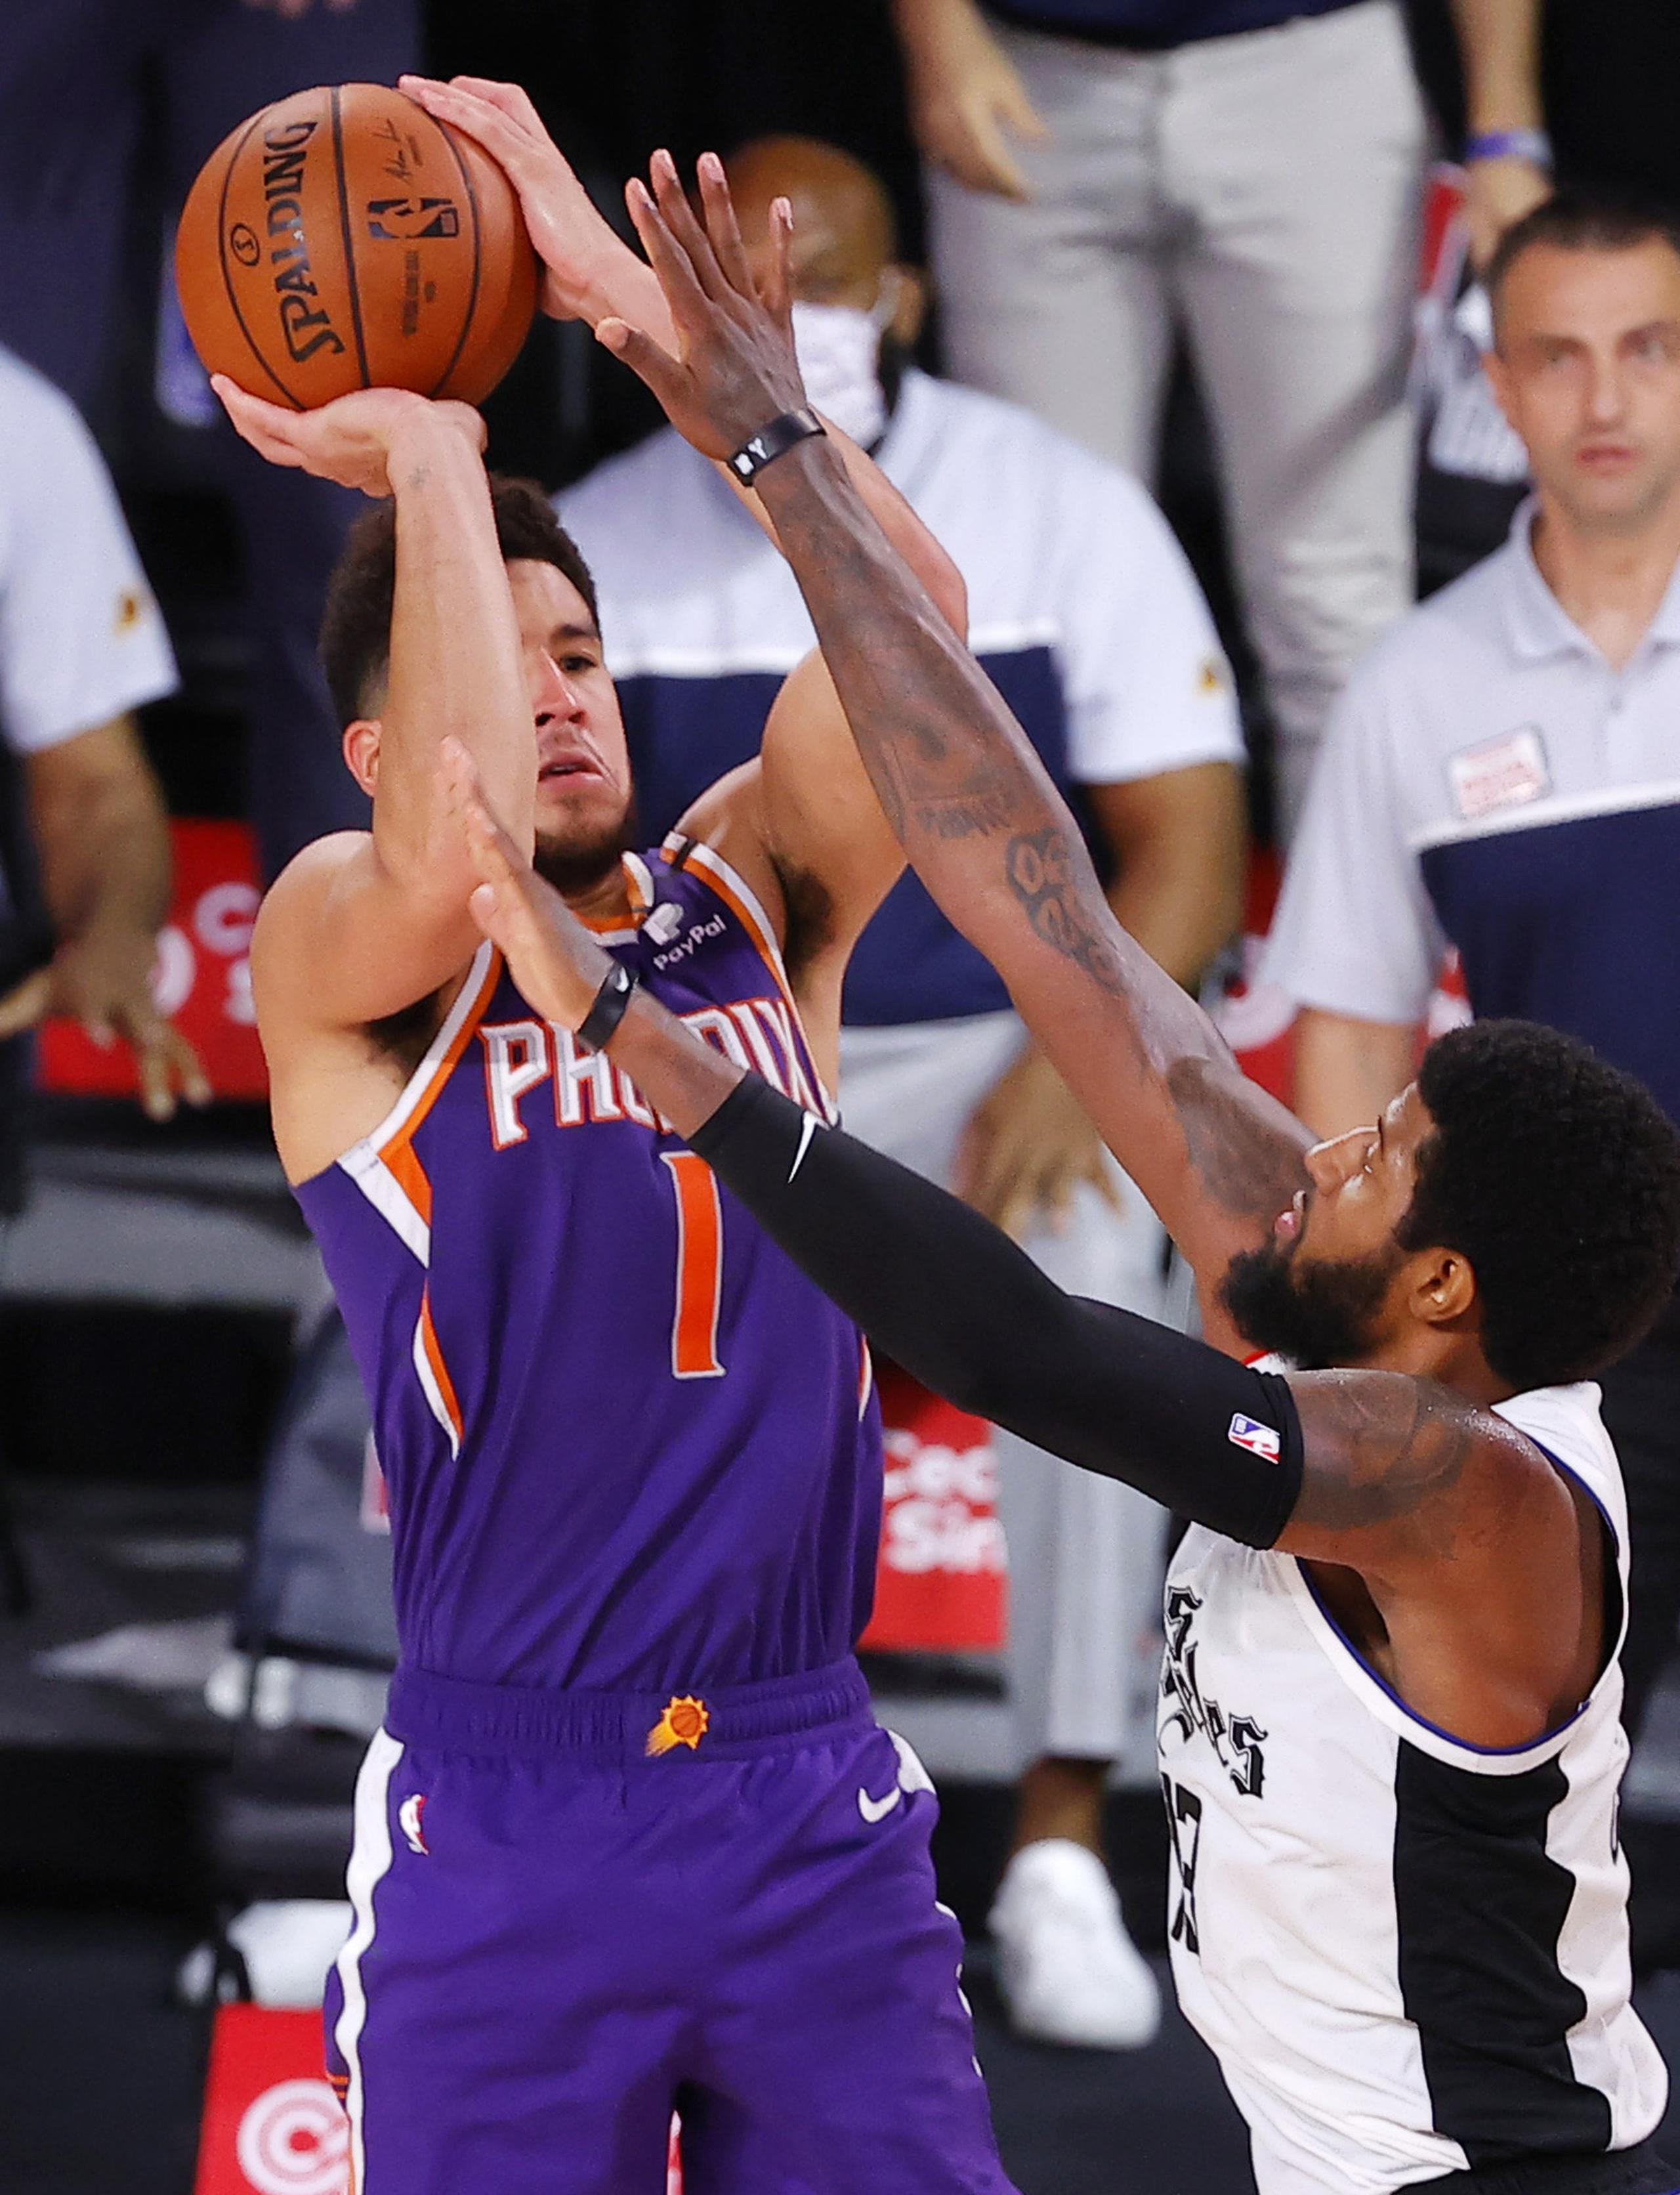 Devin Booker, de los Suns de Phoenix, consigue la canasta del triunfo frente a Paul George, de los Clippers de Los Ángeles, en Lake Buena Vista, Florida, dentro de un partido de la NBA.